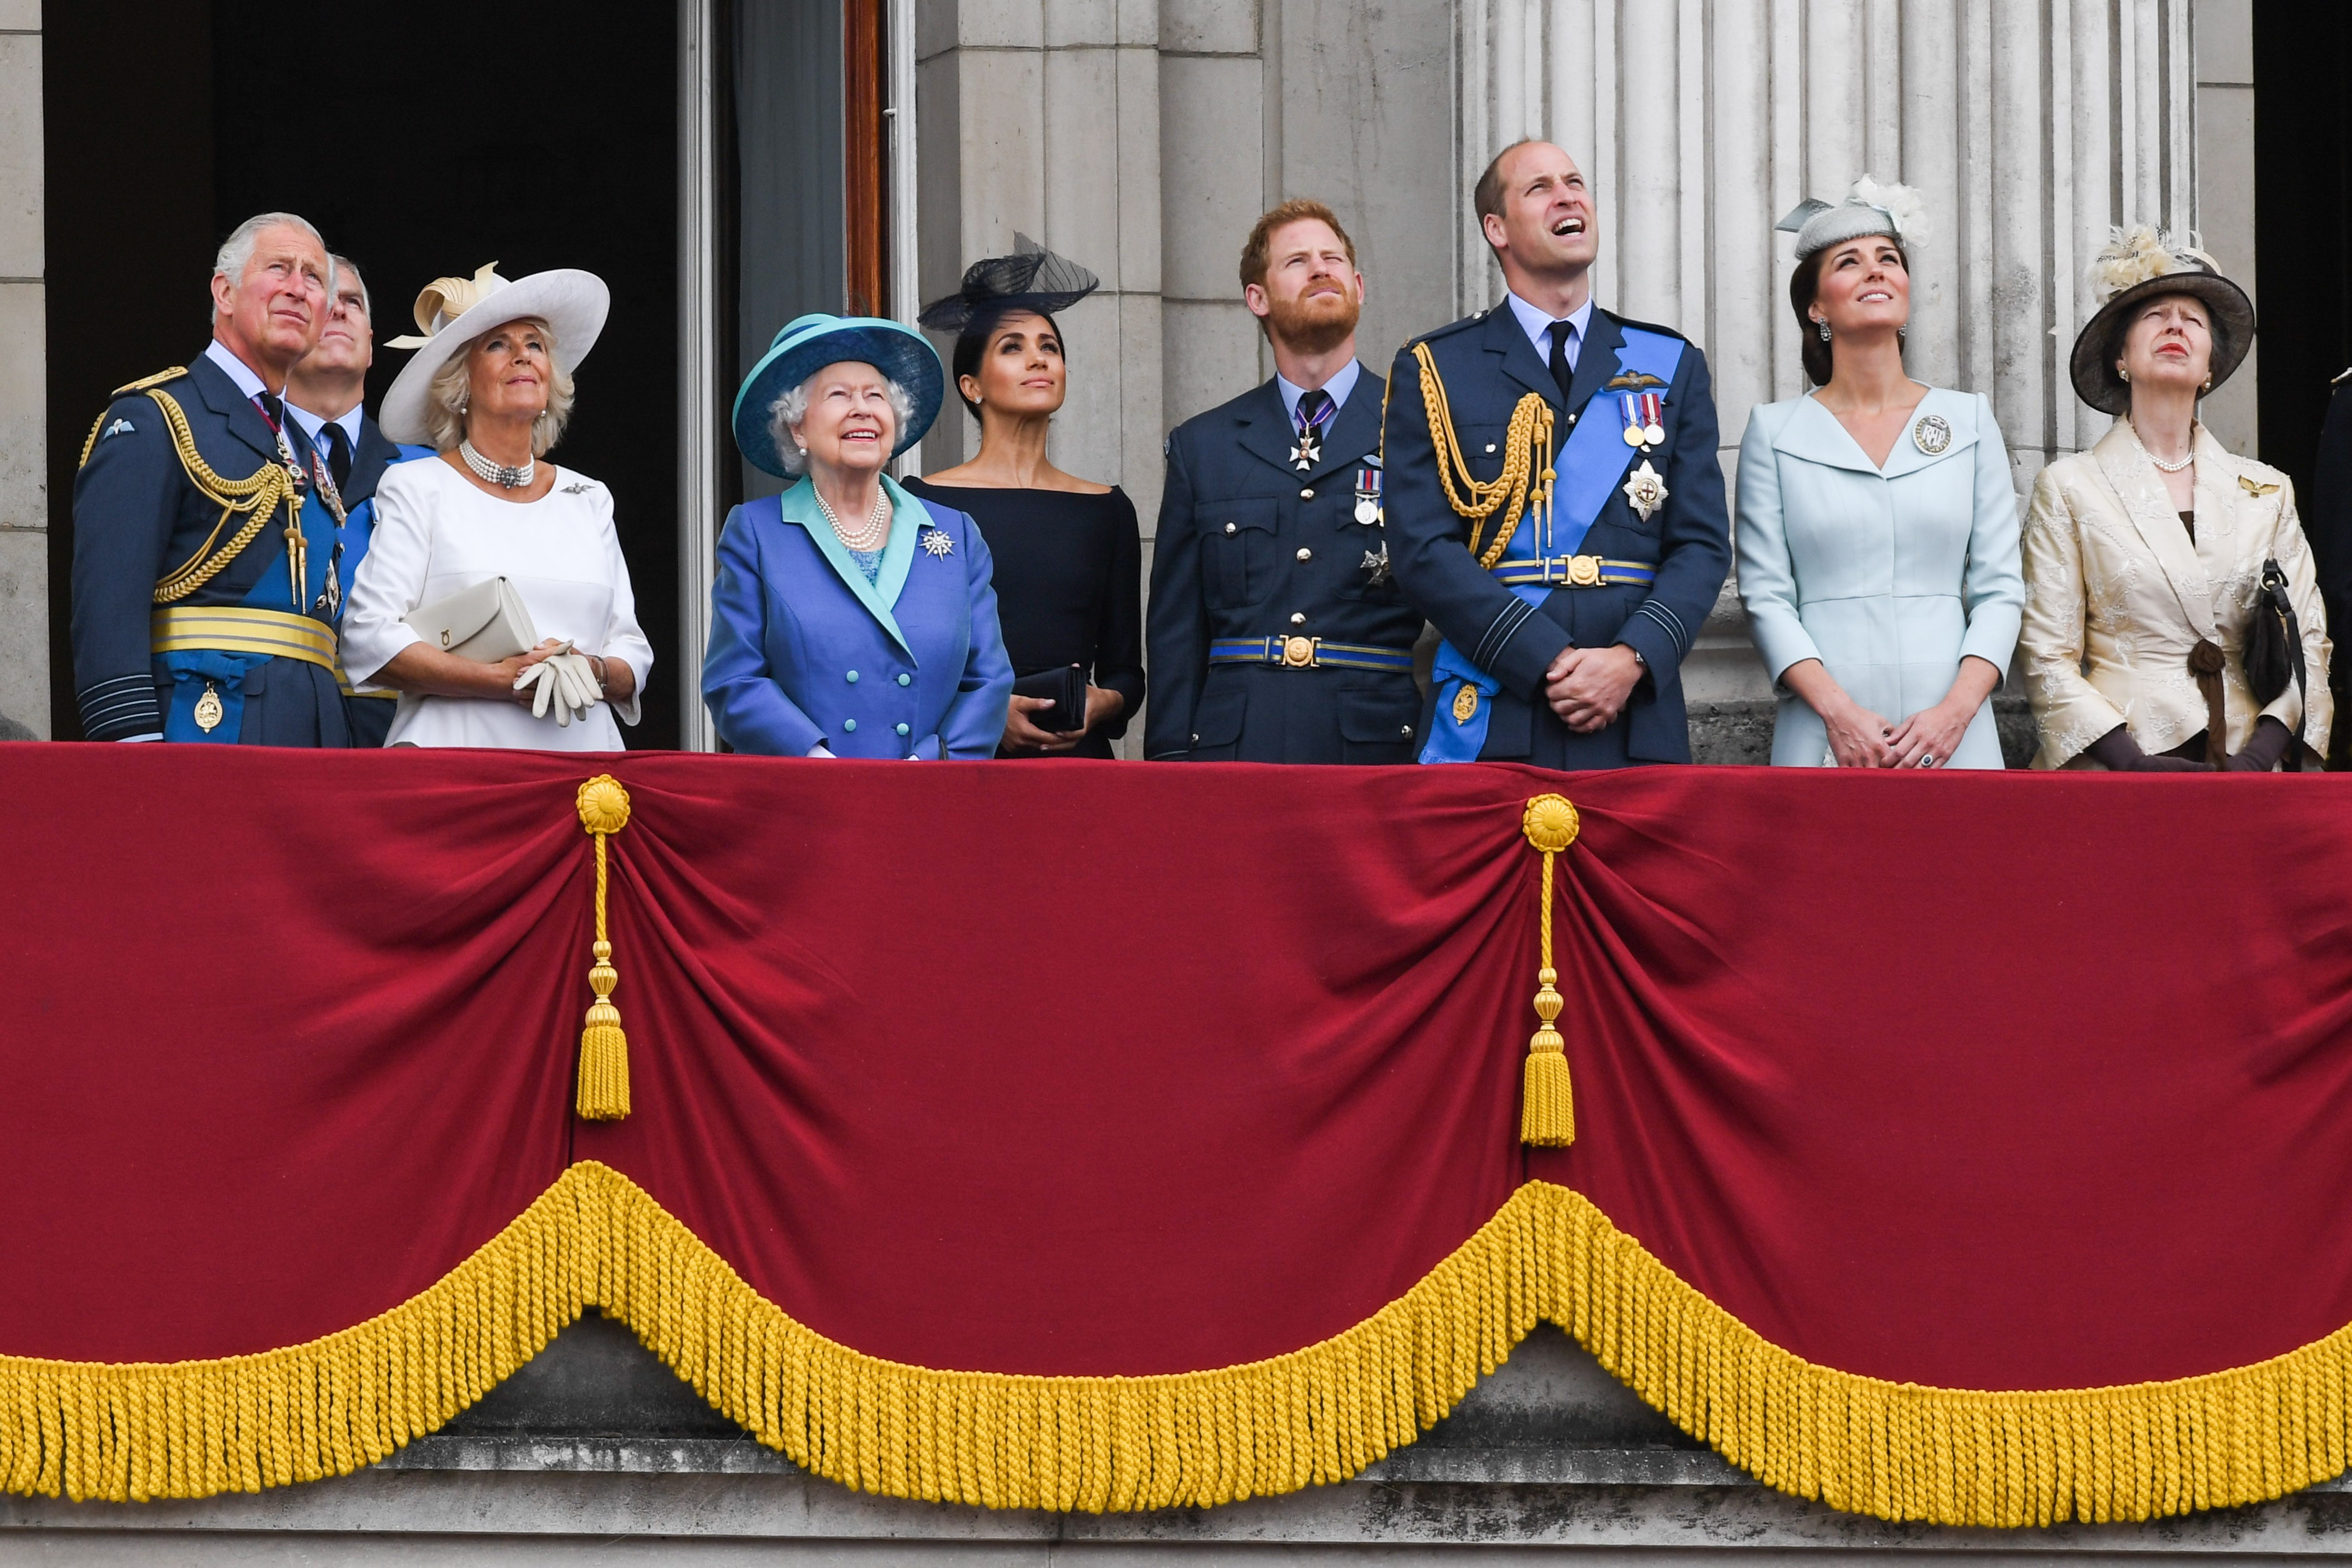 A Rainha Elizabeth 2ª na companhia do Príncipe Charles, do Príncipe William, da duquesa Kate Middleton, do Príncipe Harry e da duquesa Meghan Markle e de outros membros da Família Real Britânica em um evento da realeza (Foto: Getty Images)